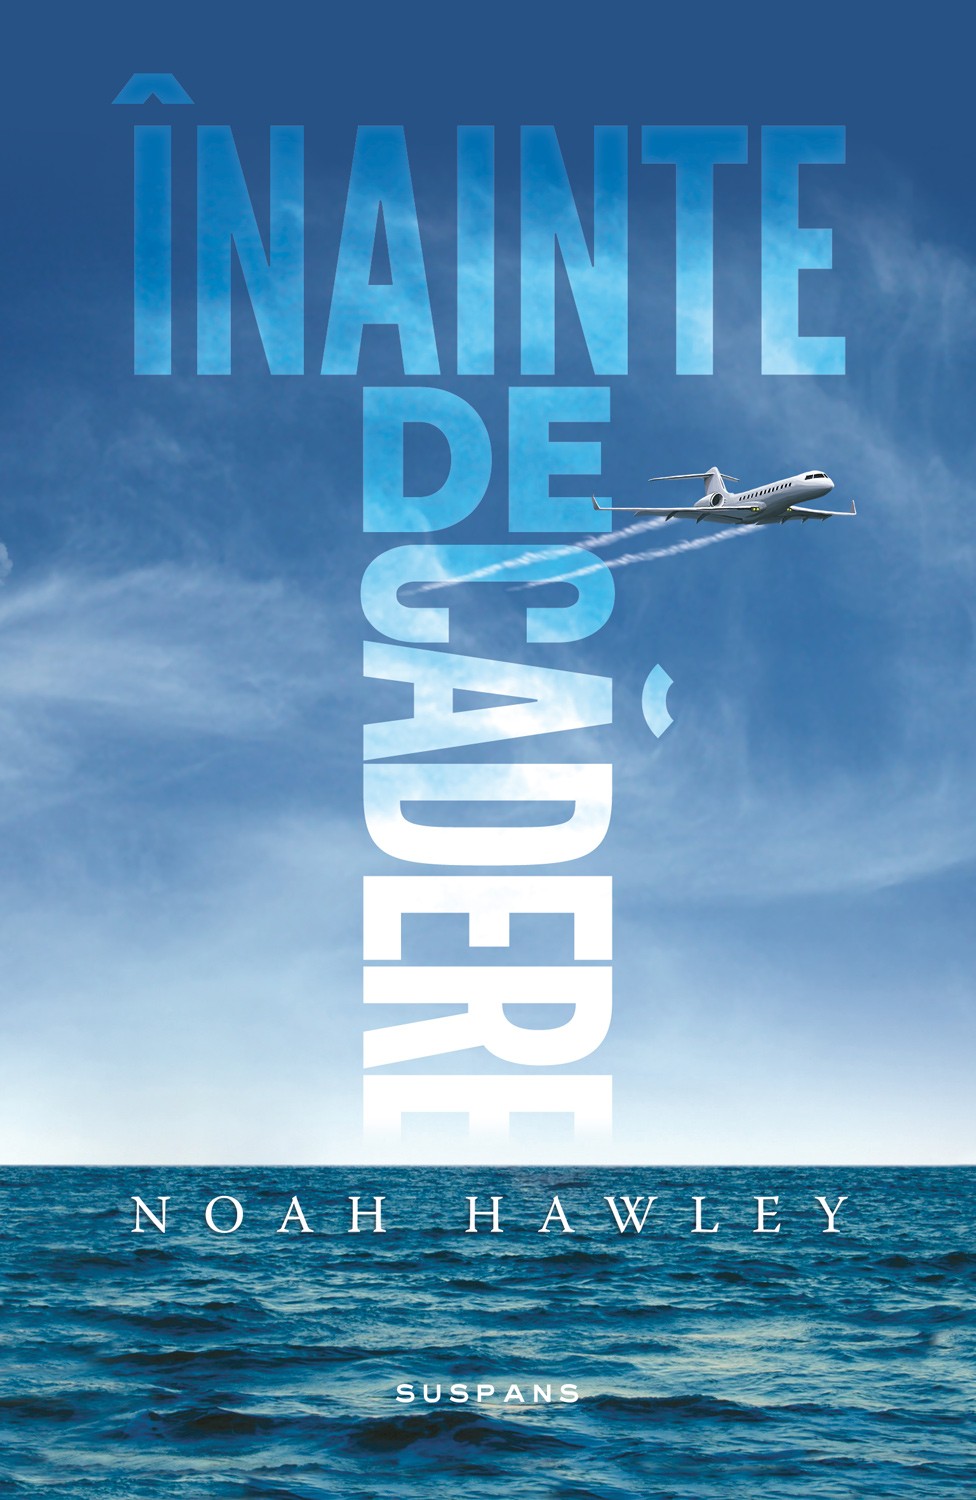 eBook Inainte de cadere - Noah Hawley